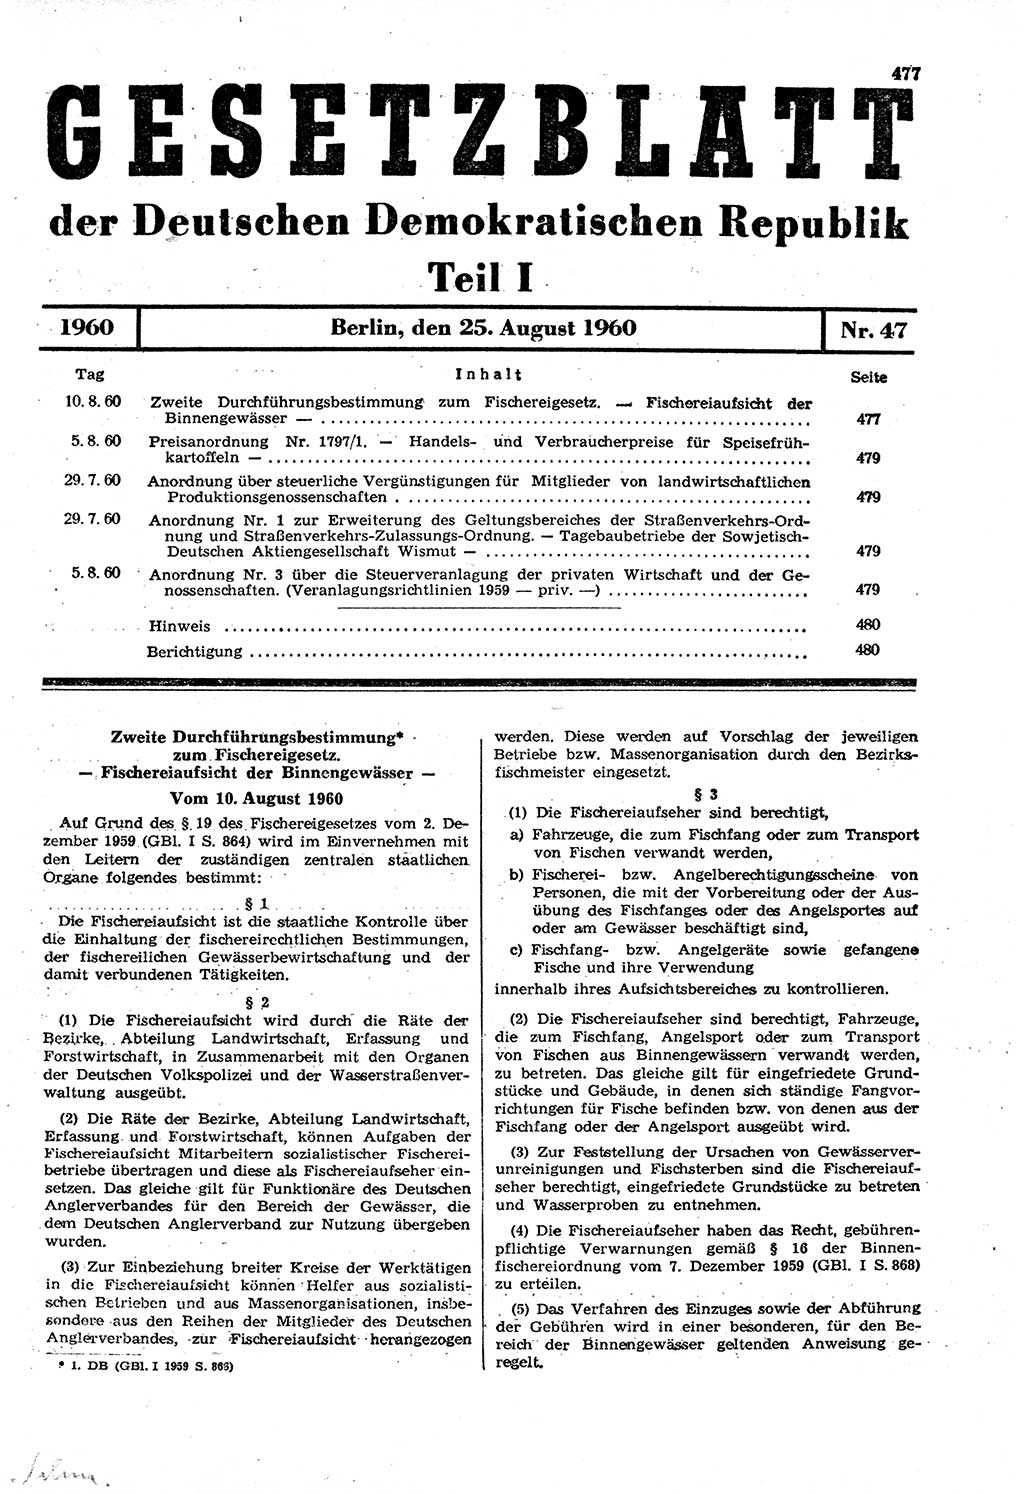 Gesetzblatt (GBl.) der Deutschen Demokratischen Republik (DDR) Teil Ⅰ 1960, Seite 477 (GBl. DDR Ⅰ 1960, S. 477)